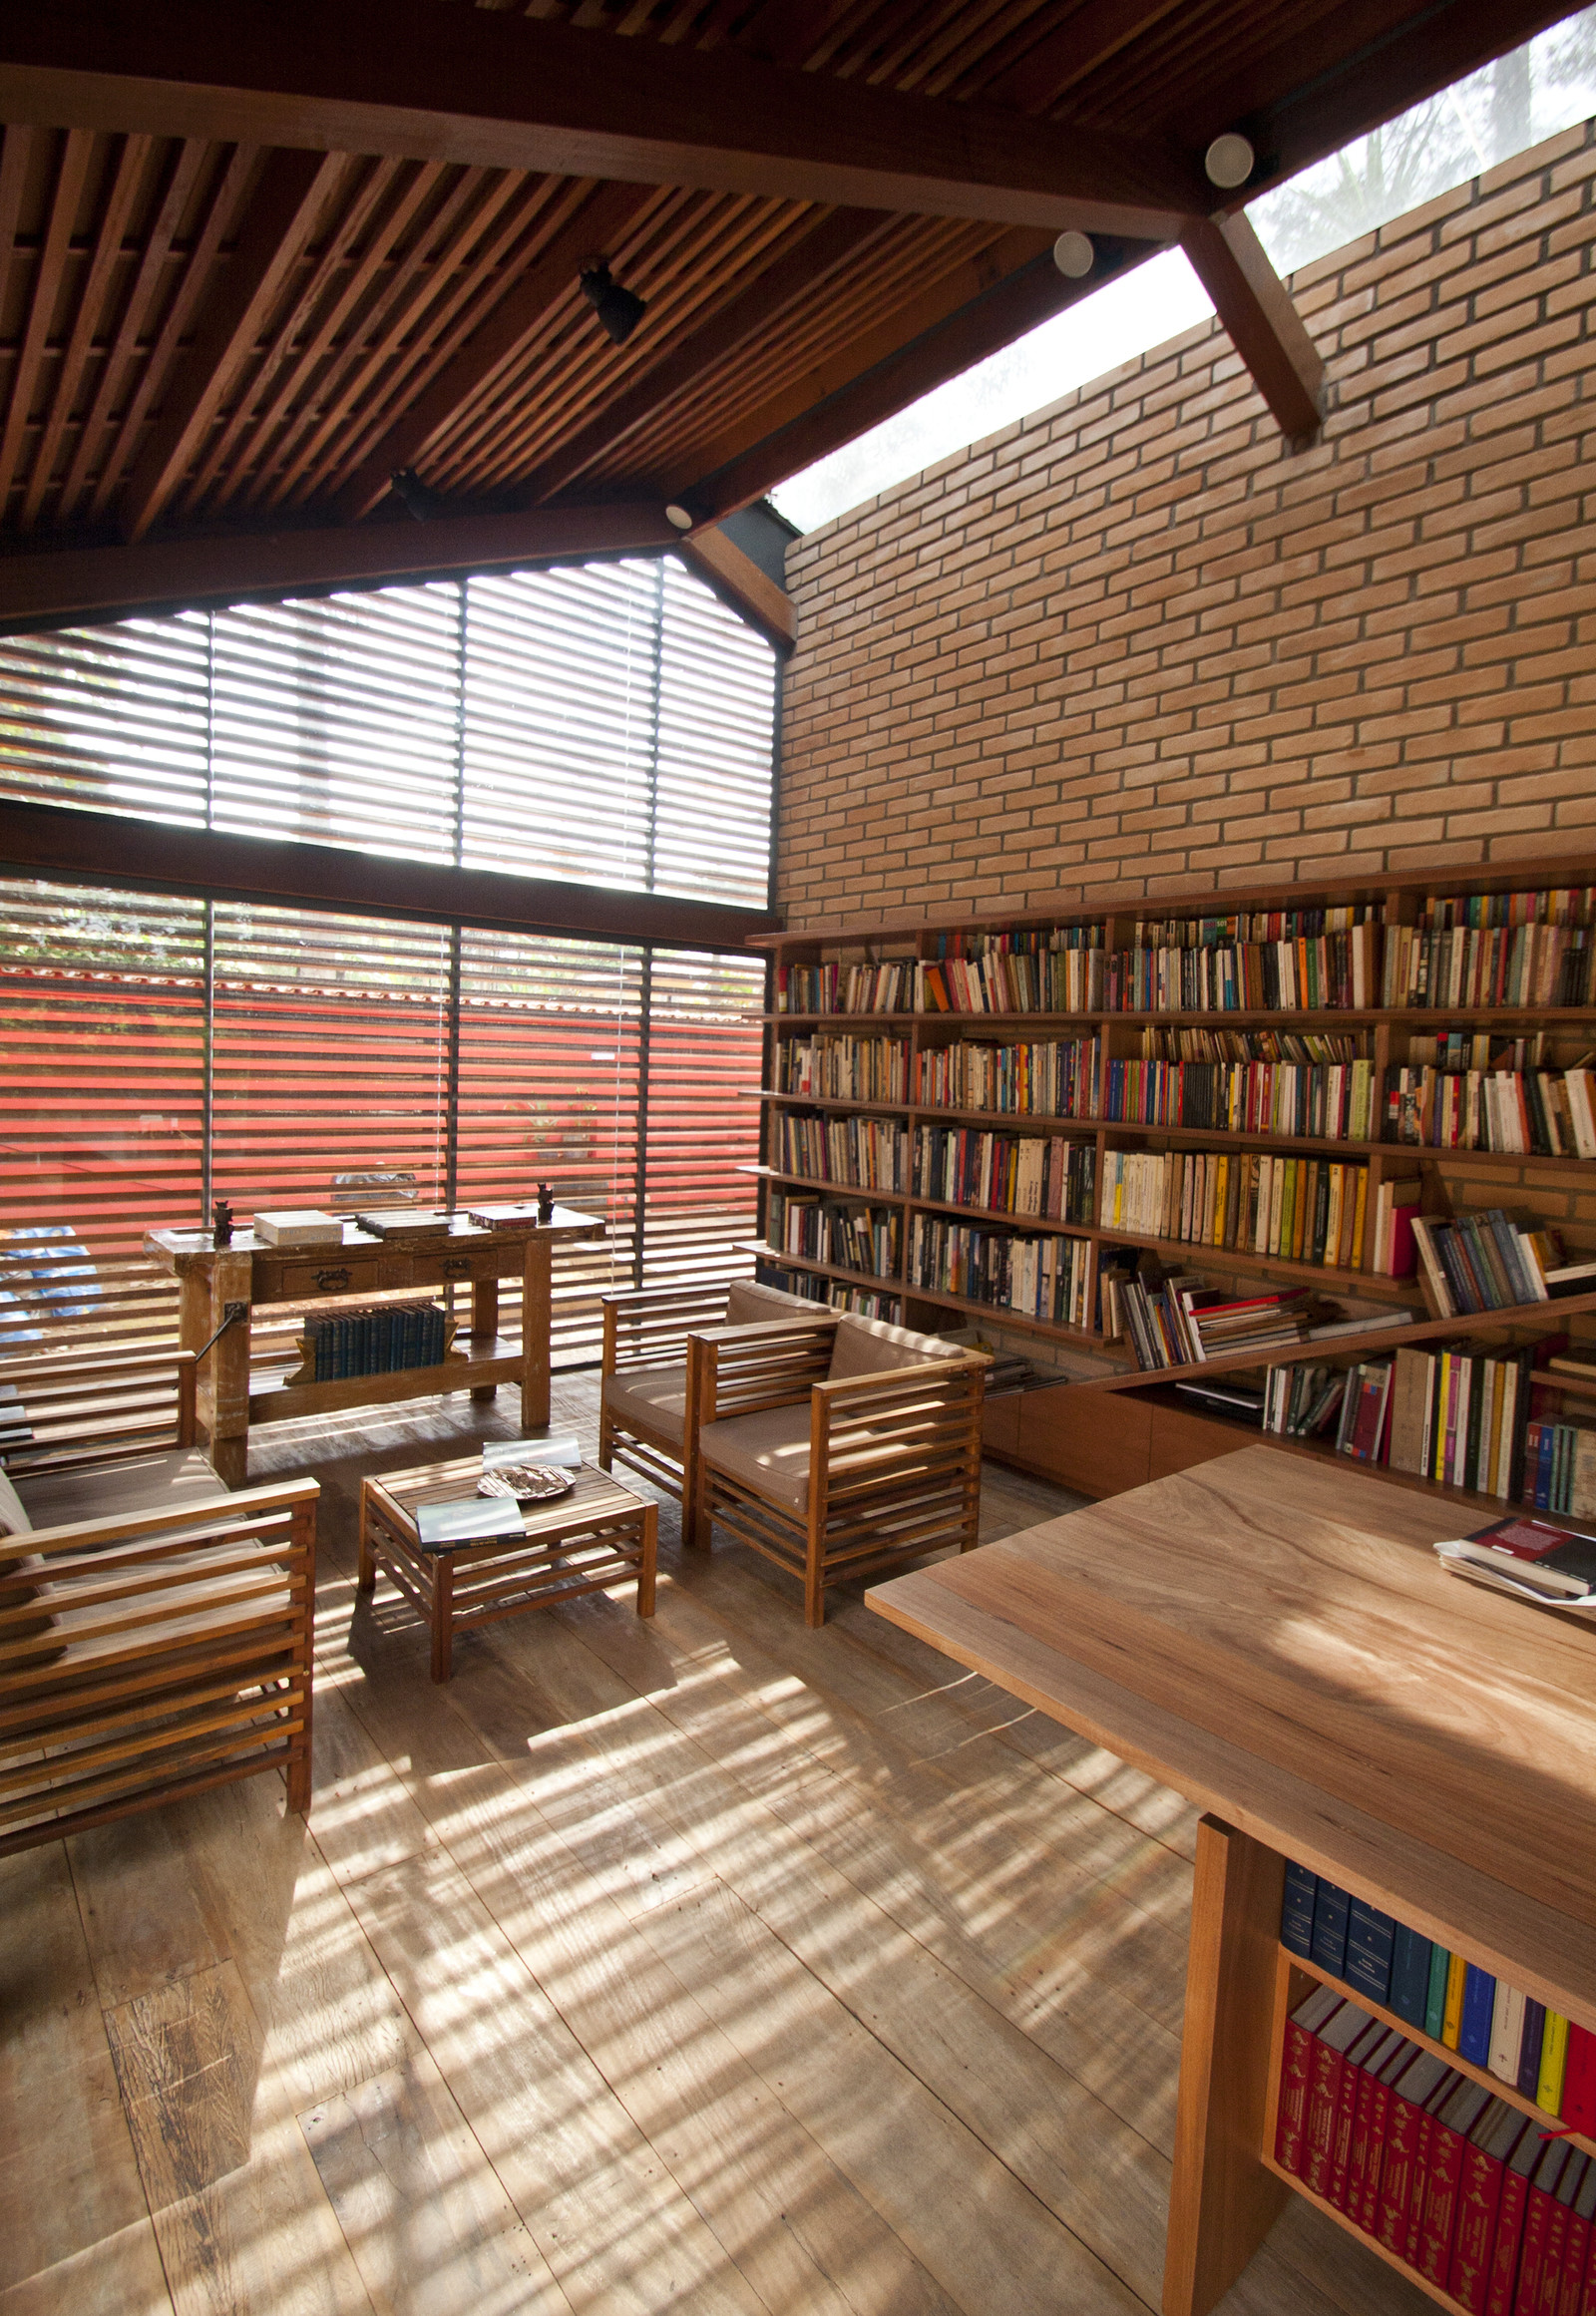 Library in Brazil